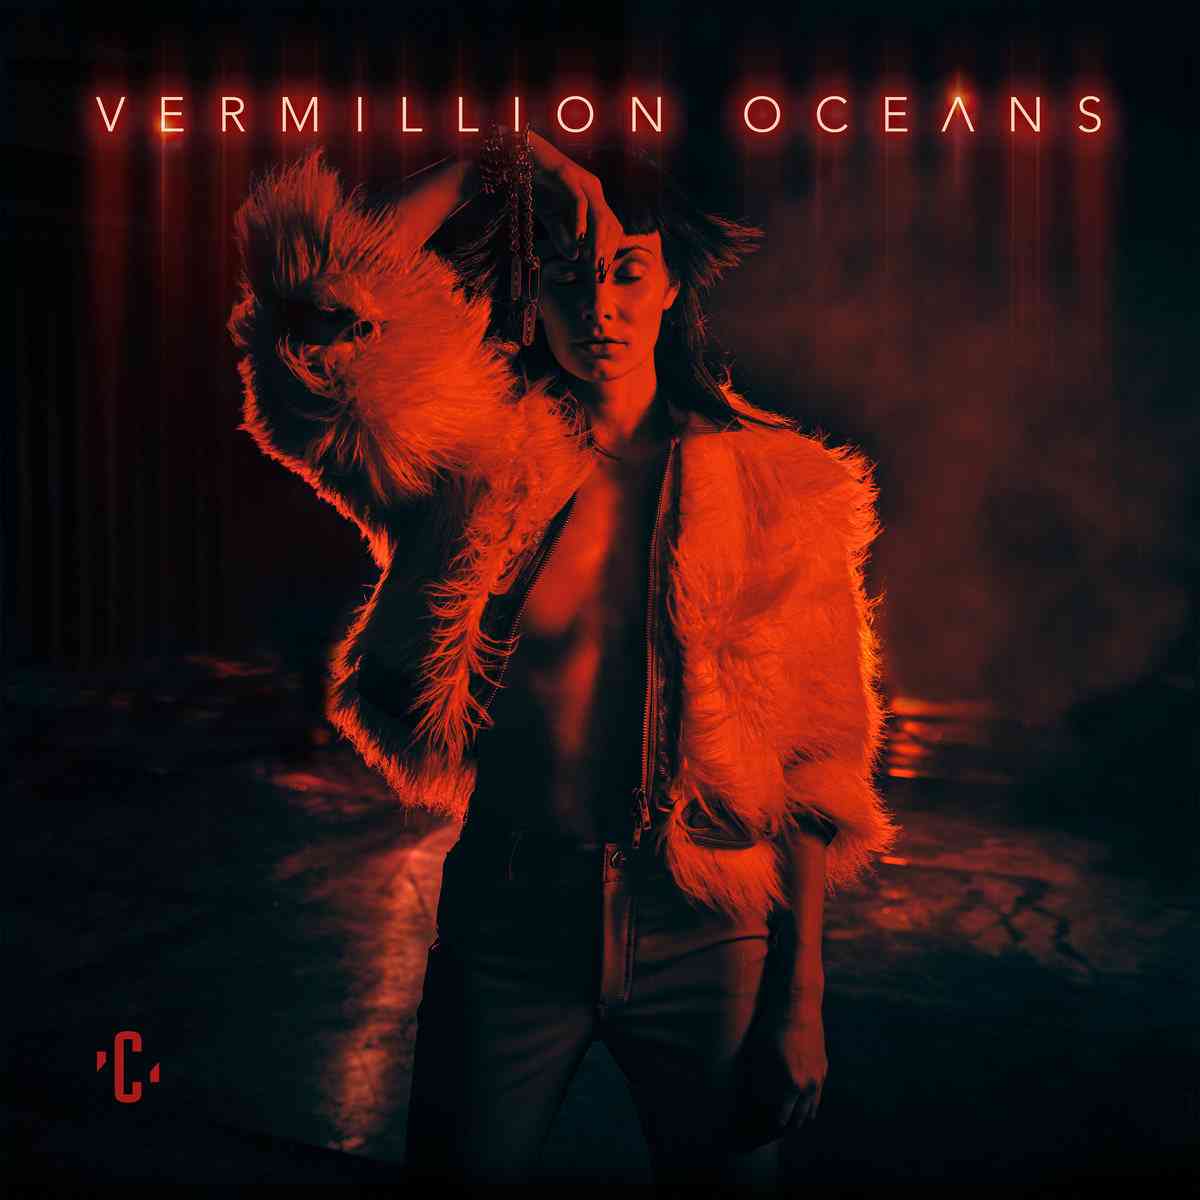 Credic - vermillion oceans - album cover